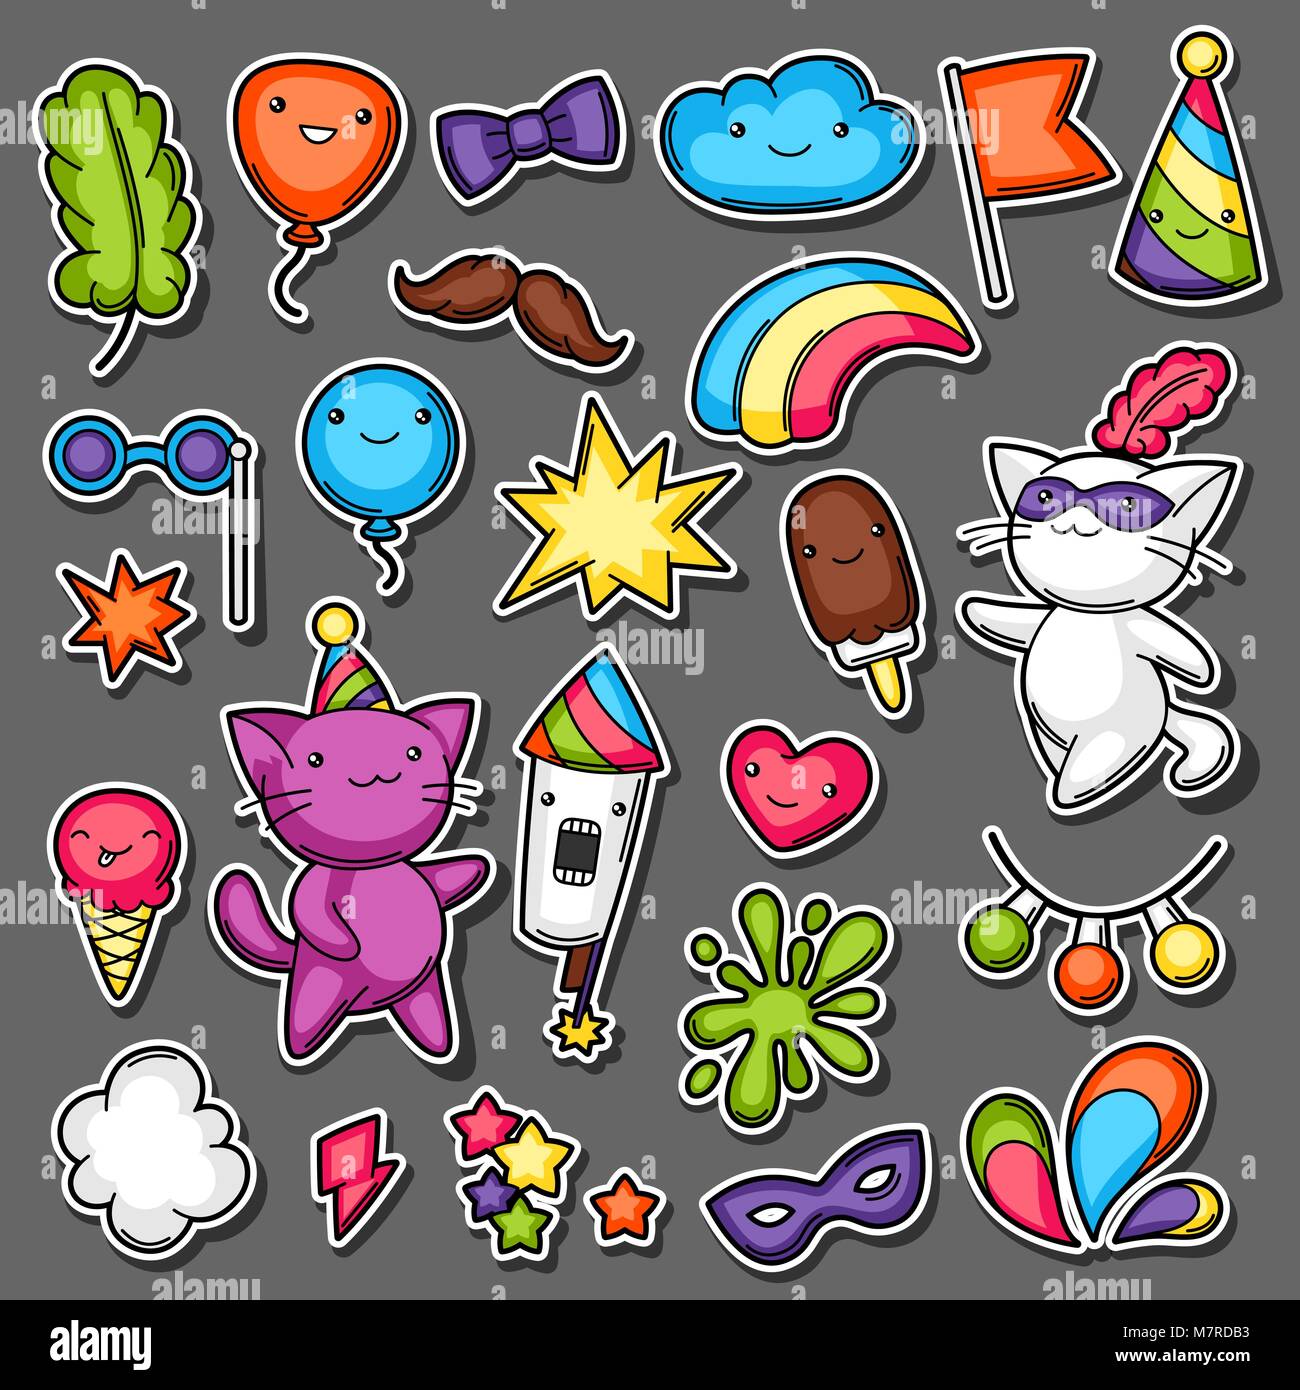 Karneval Party kawaii Sticker Set. Süße Katzen, Dekorationen für Feiern, Objekte und Symbole Stock Vektor